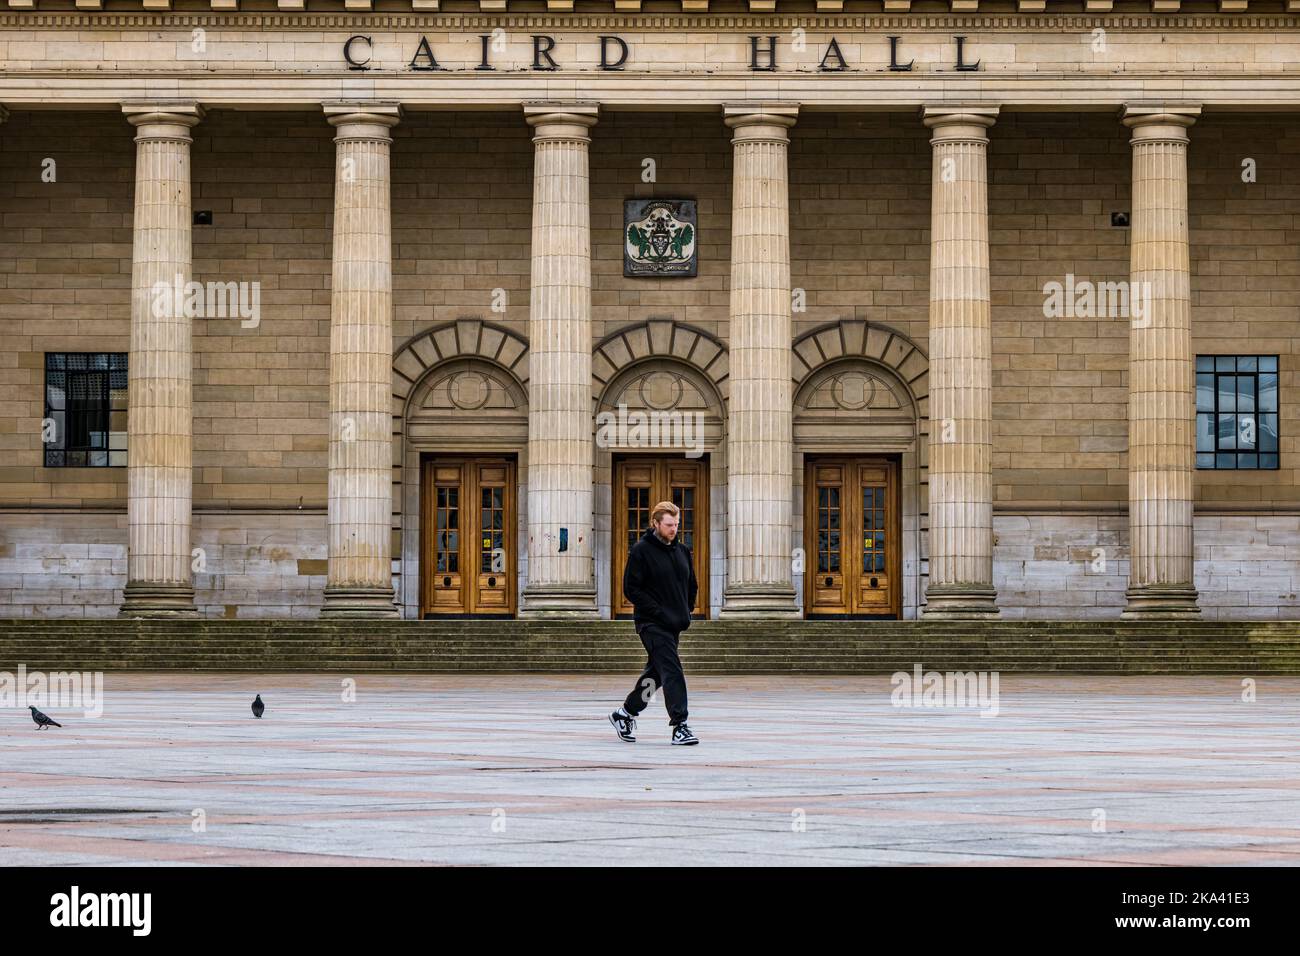 Les piliers et les portes de la salle de concert Caird Hall à City Square, Dundee, Écosse, Royaume-Uni Banque D'Images